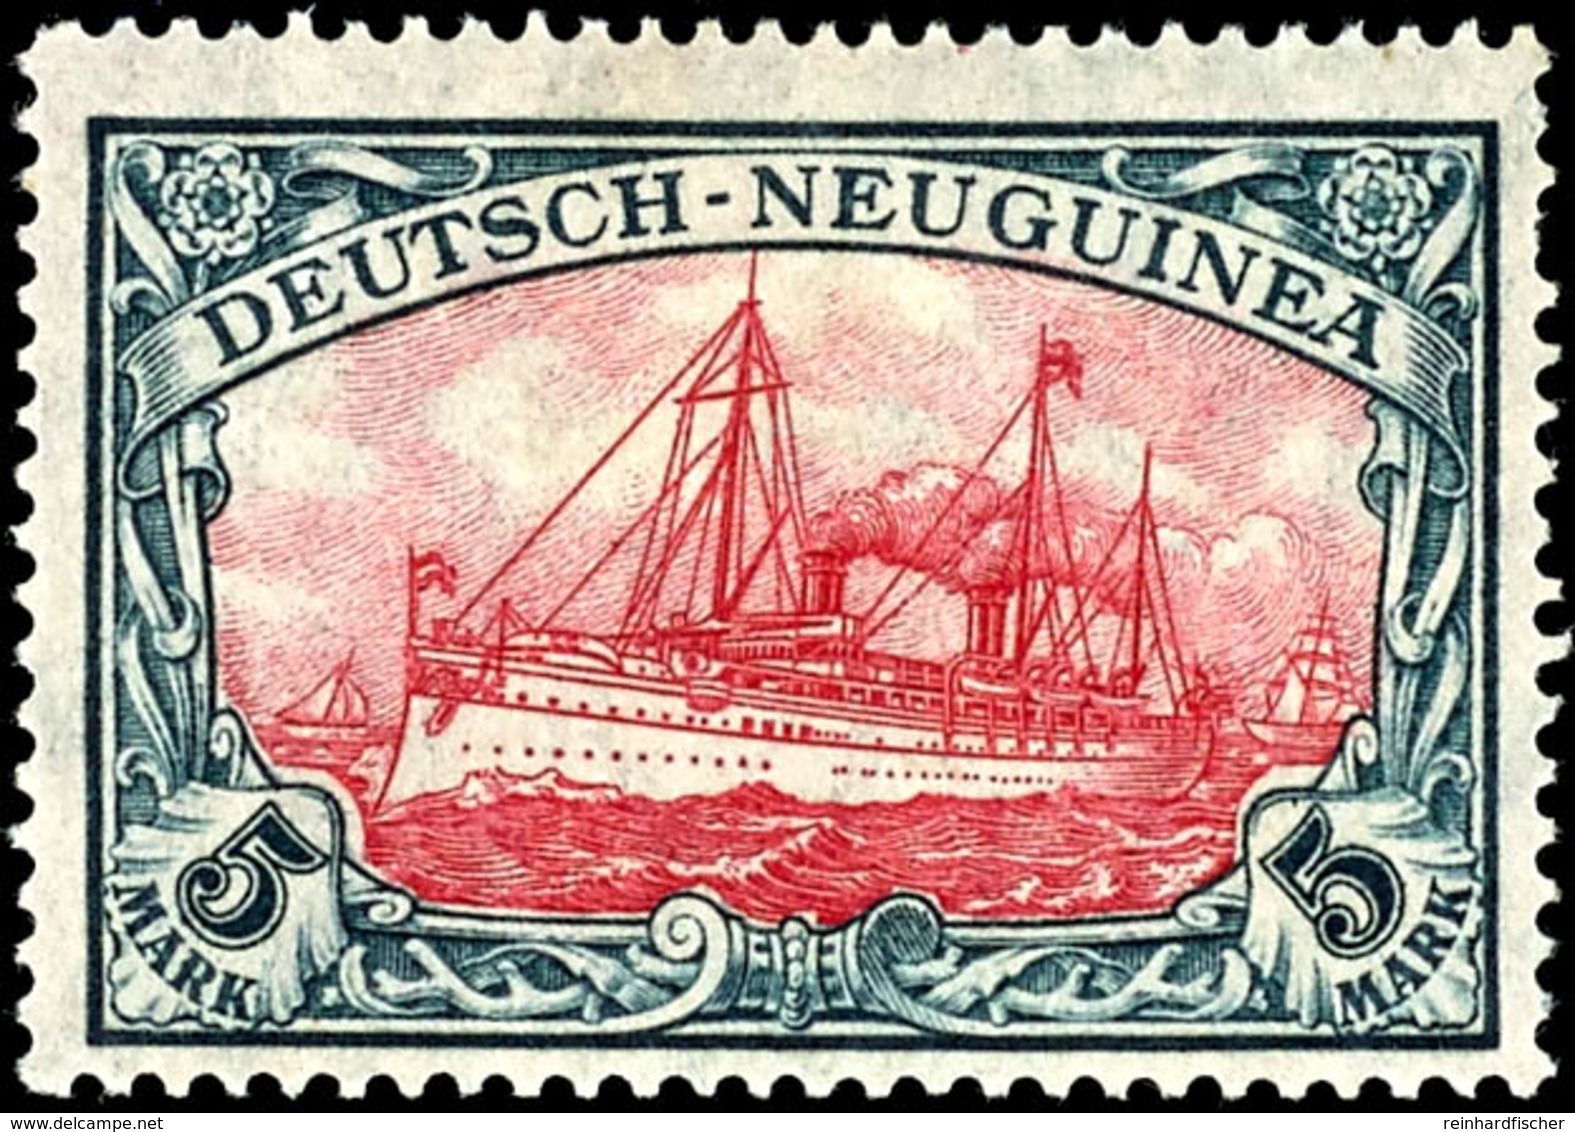 6429 5 RM Schiffszeichnung Mit Wasserzeichen, Kriegsdruck, Mittelstück Type III, Fotoattest Jäschke-Lantelme BPP: " Farb - Deutsch-Neuguinea